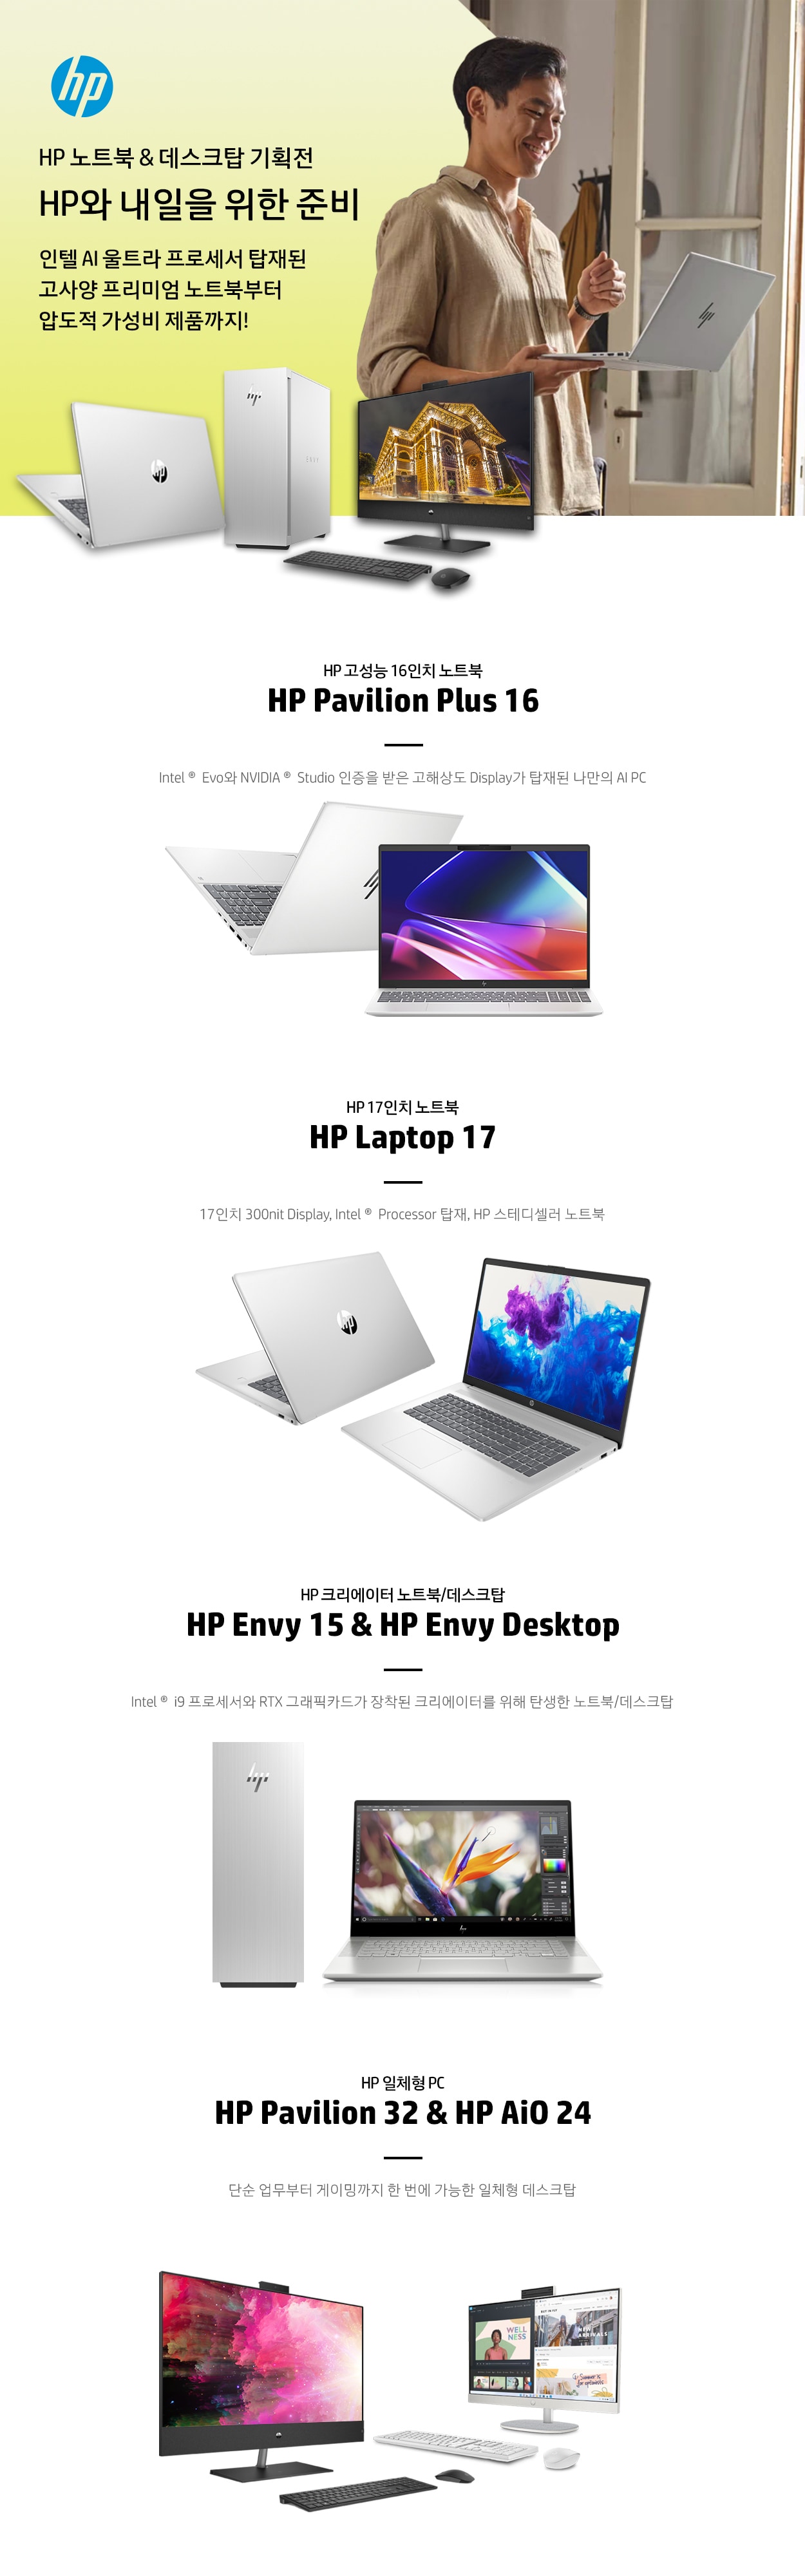 HP 노트북&데스크탑 기획전 HP와 내일을 위한 준비 인텔 AI 울트라 프로세서 탑재된 고사양 프리미엄 노트북부터 압도적 가성비 제품까지!